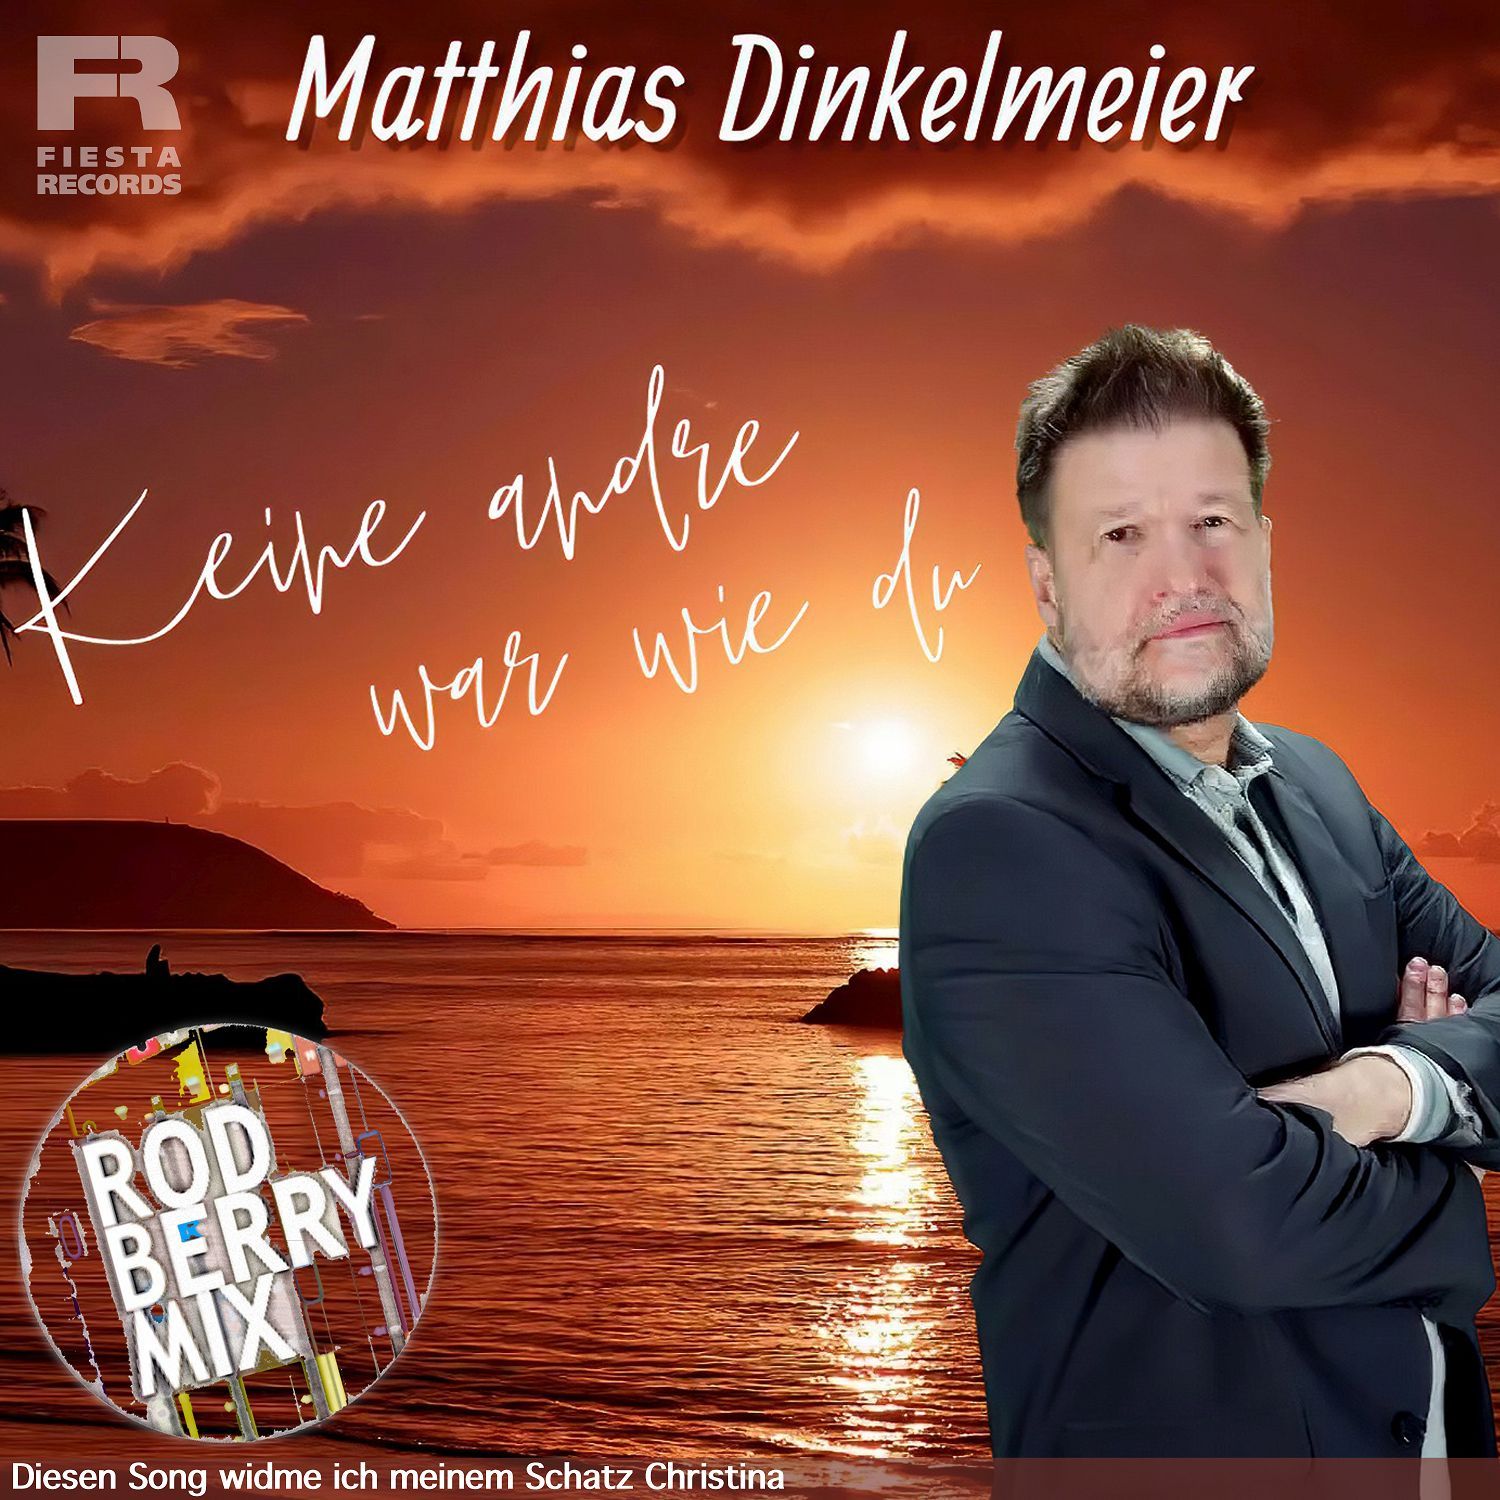 Matthias Dinkelmeier - Keine andre war wie Du (Rod Berry Mix)